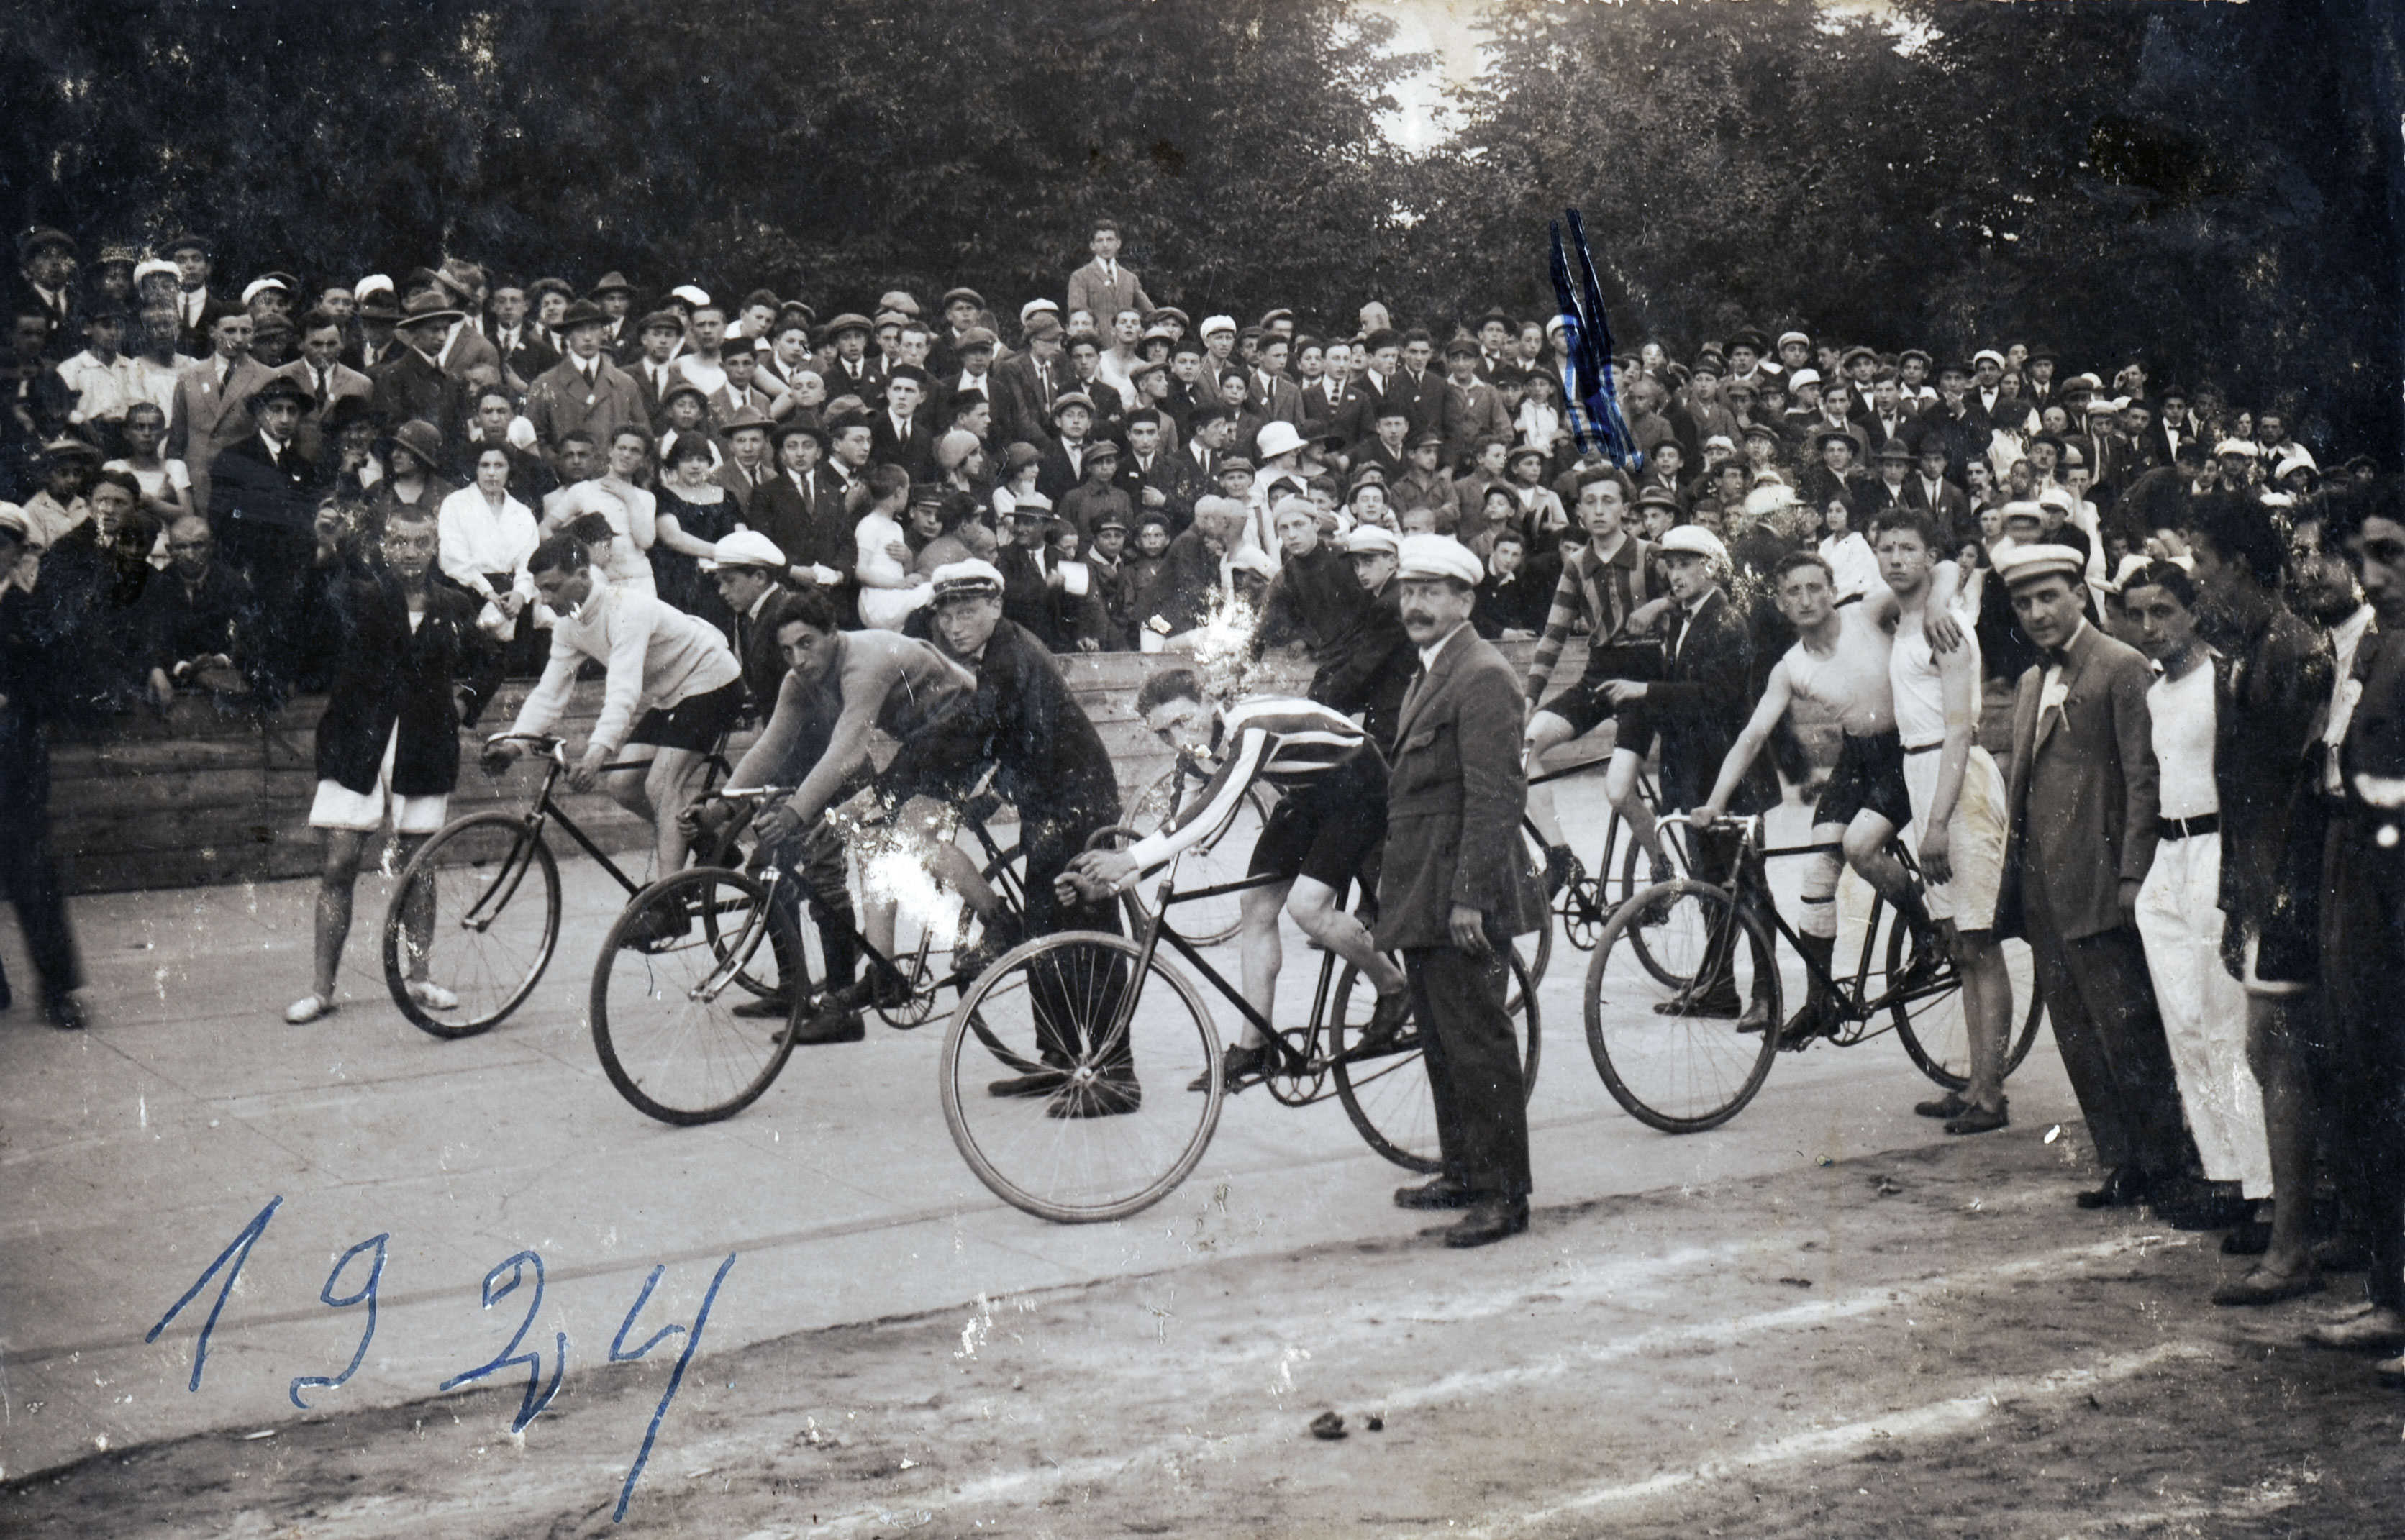 משה צוקרמן (מתחת הסימון הכחול) ורוכבי האופניים של אגודת הספורט בר כוכבא לפני הזנקה למירוץ תחרותי. לודז', 1924